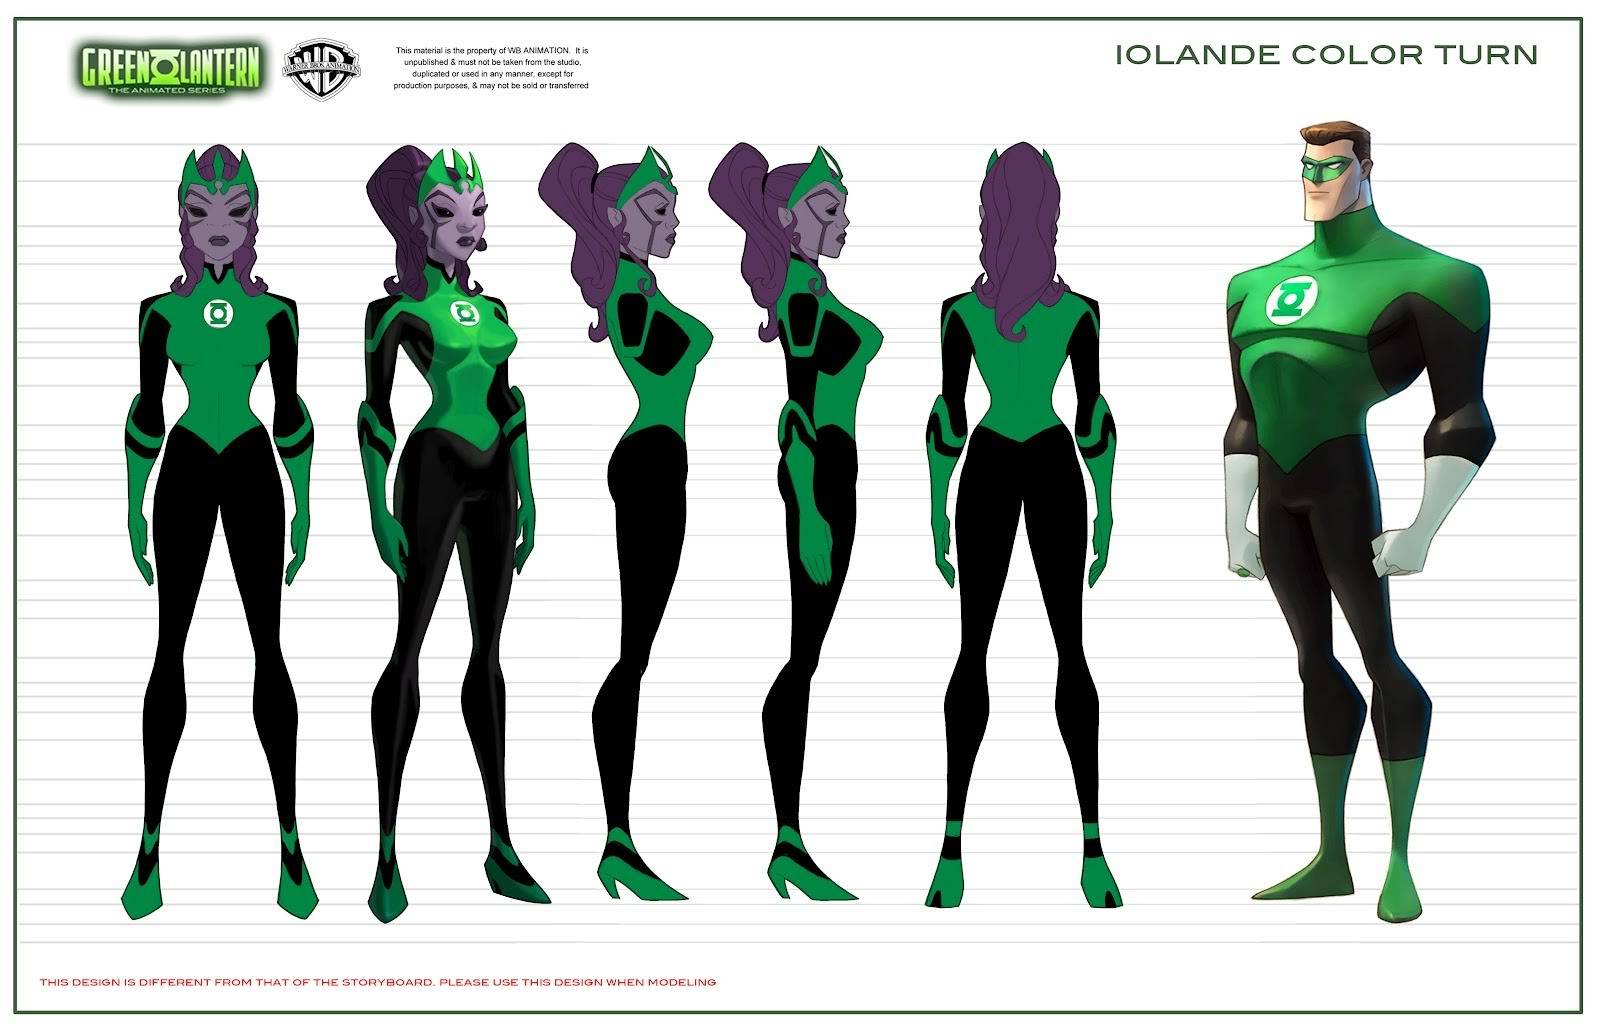 [TV] [Tópico Oficial] Green Lantern: The Animated Series - Série pode retornar! - Página 6 Iolande